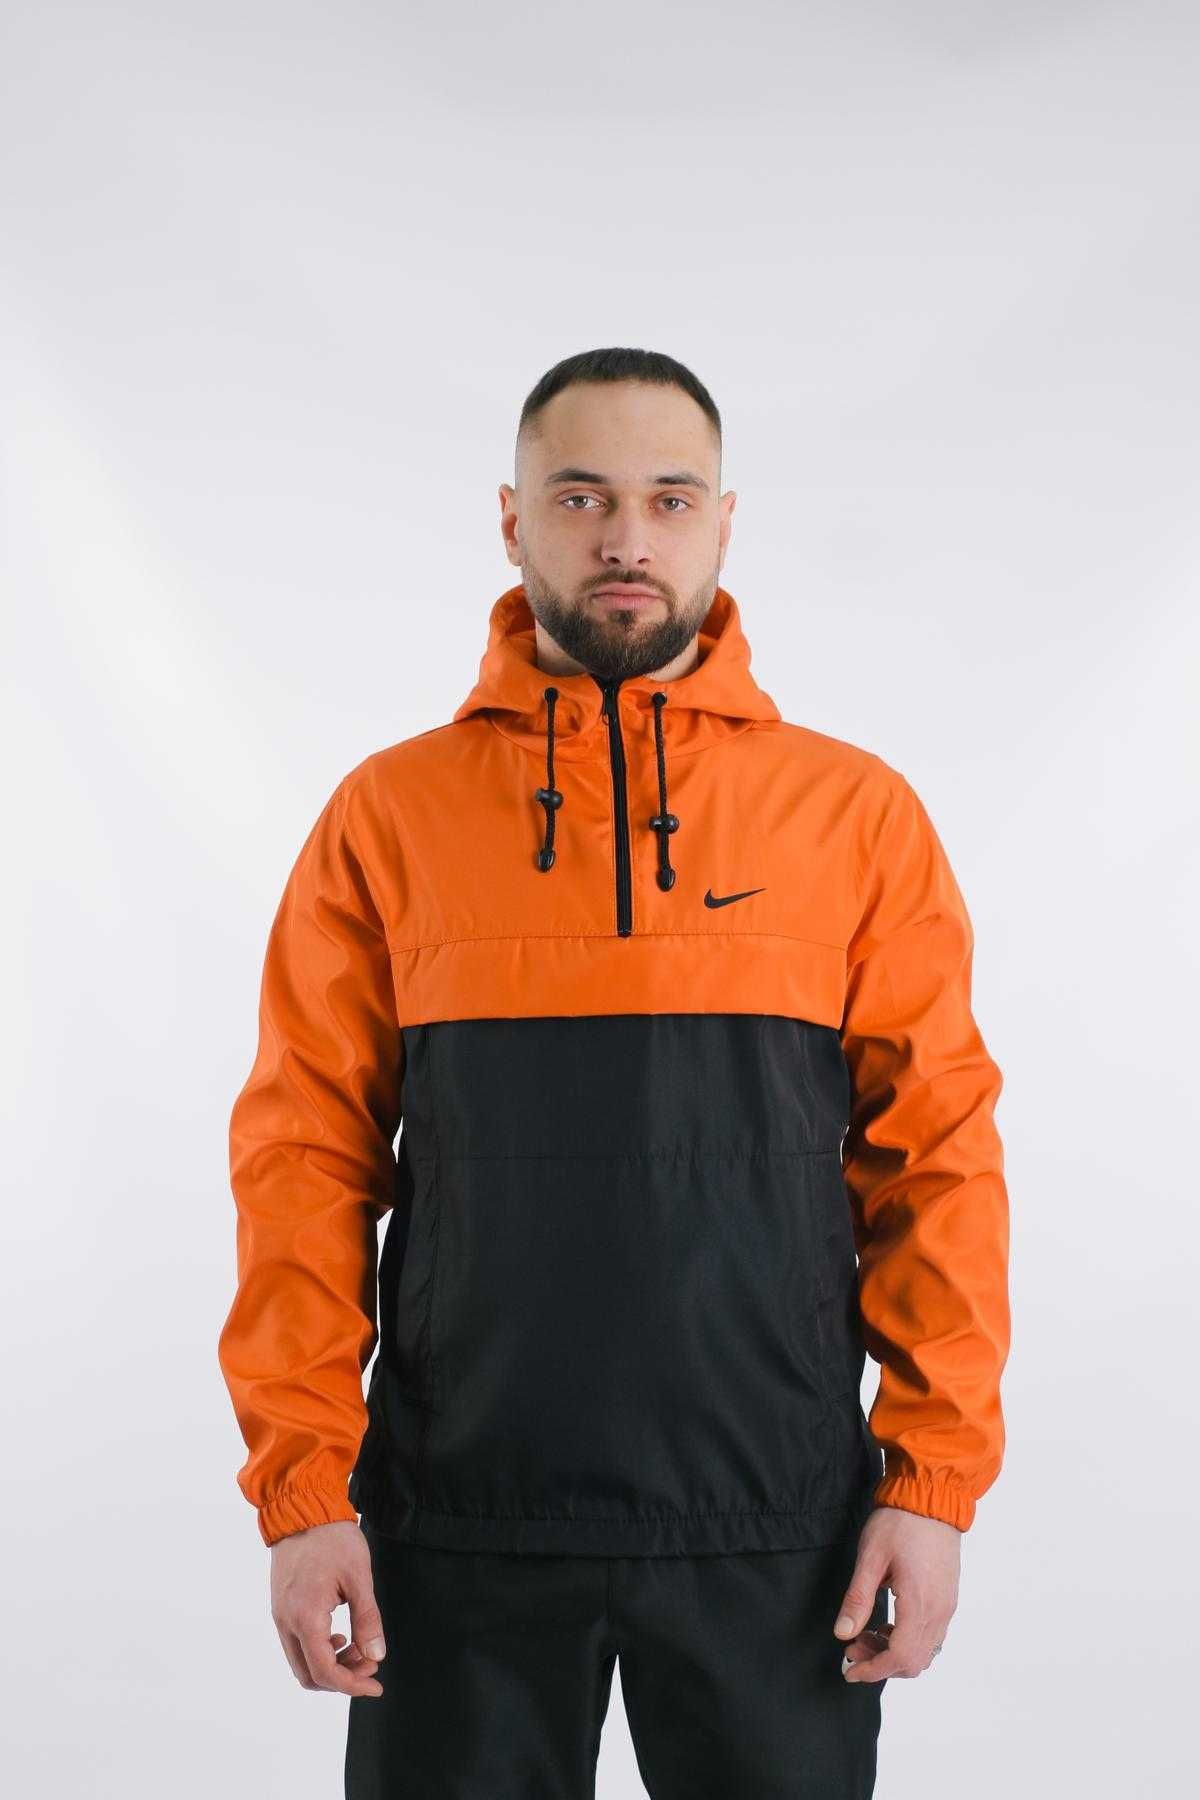 Анорак чоловічий Nike, помаранчево-чорний анорак найк, куртка, nike